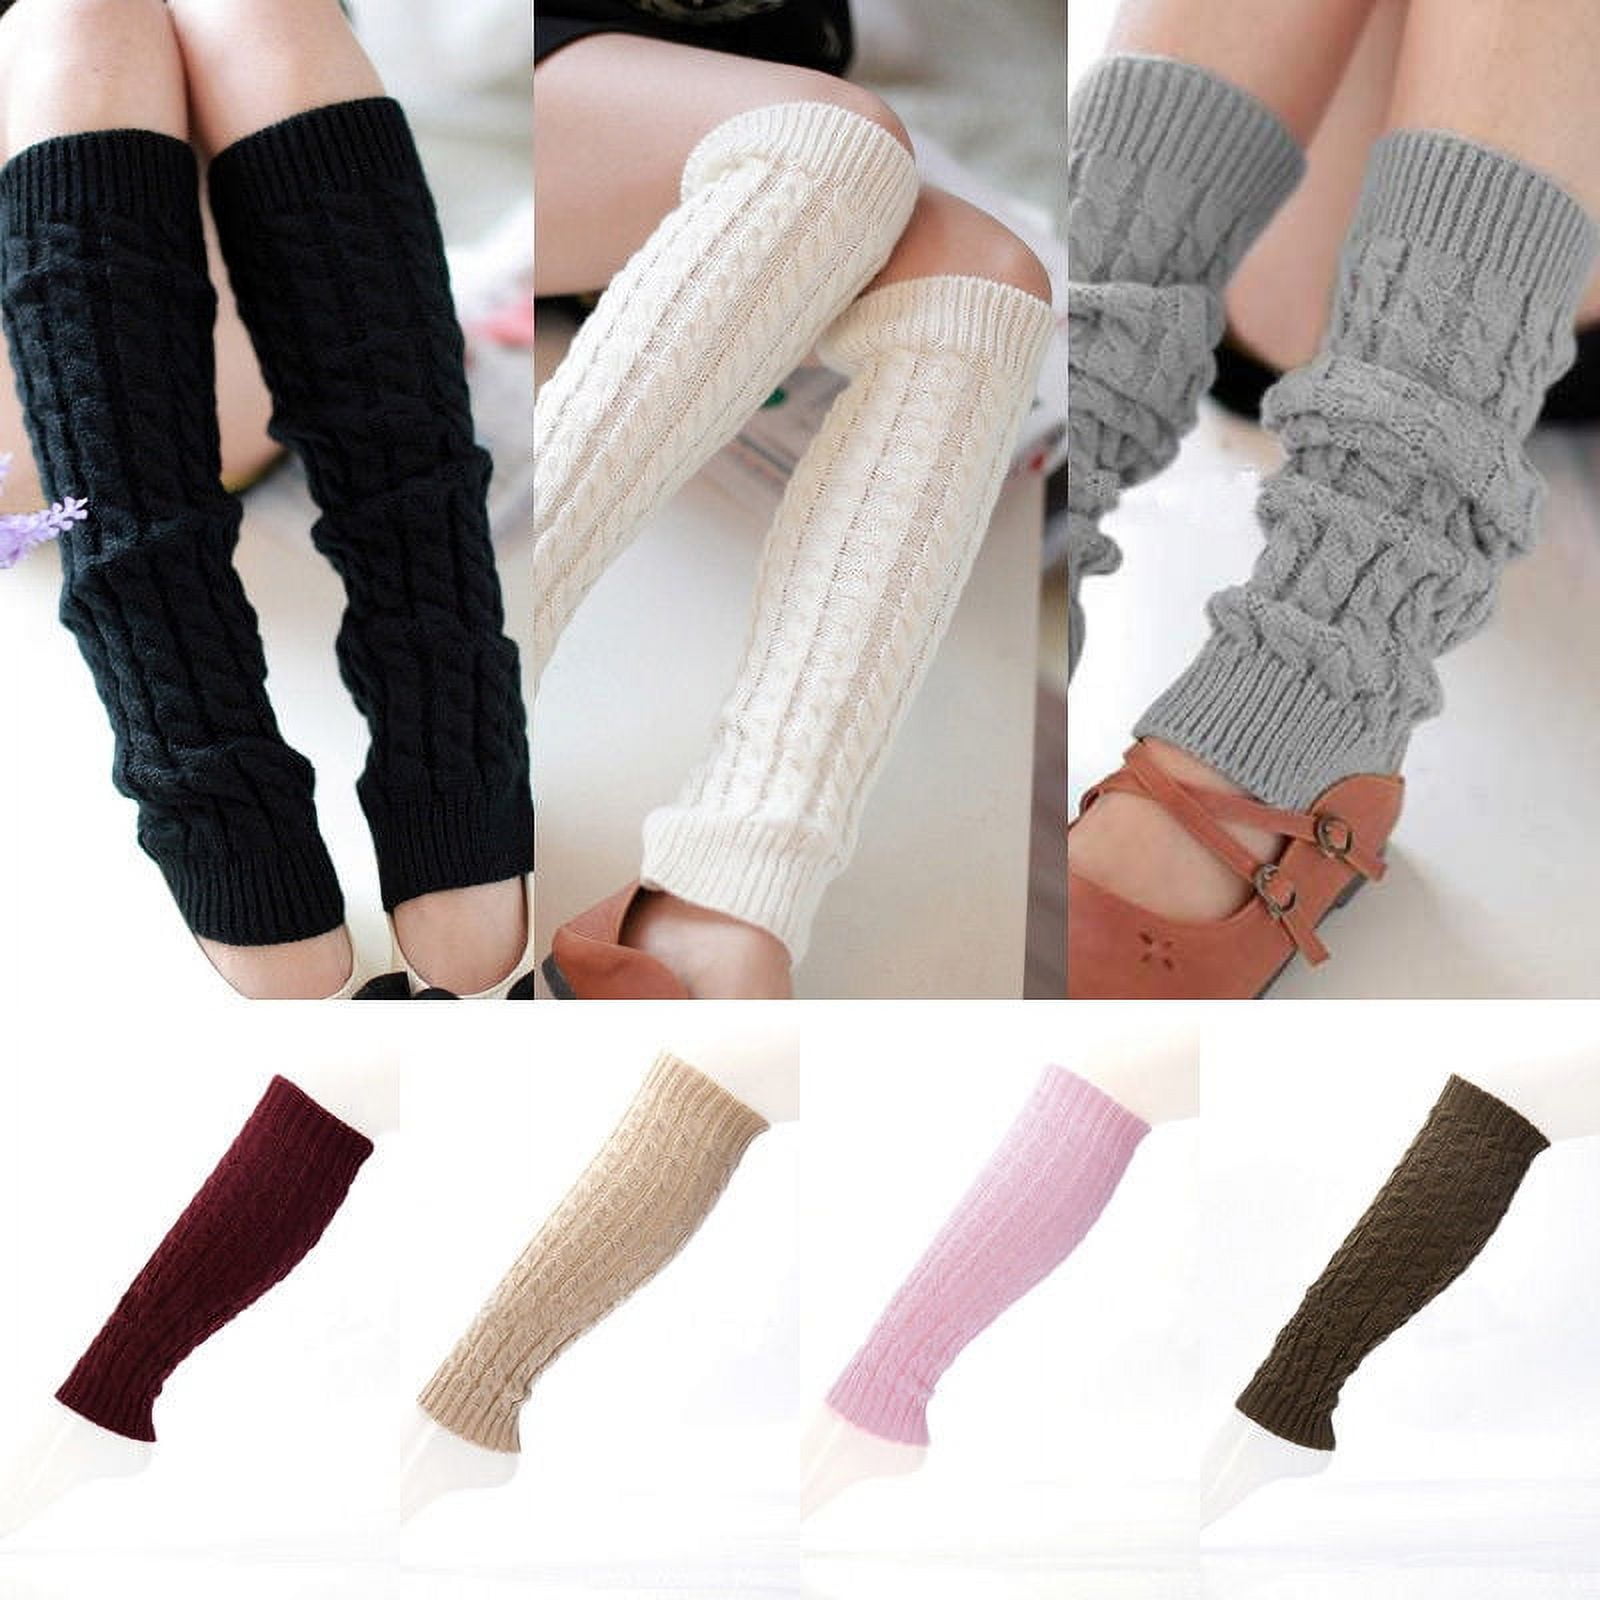 CATHERY Leg Warmer Women Warm Knee High Winter Knit Crochet Legging ...